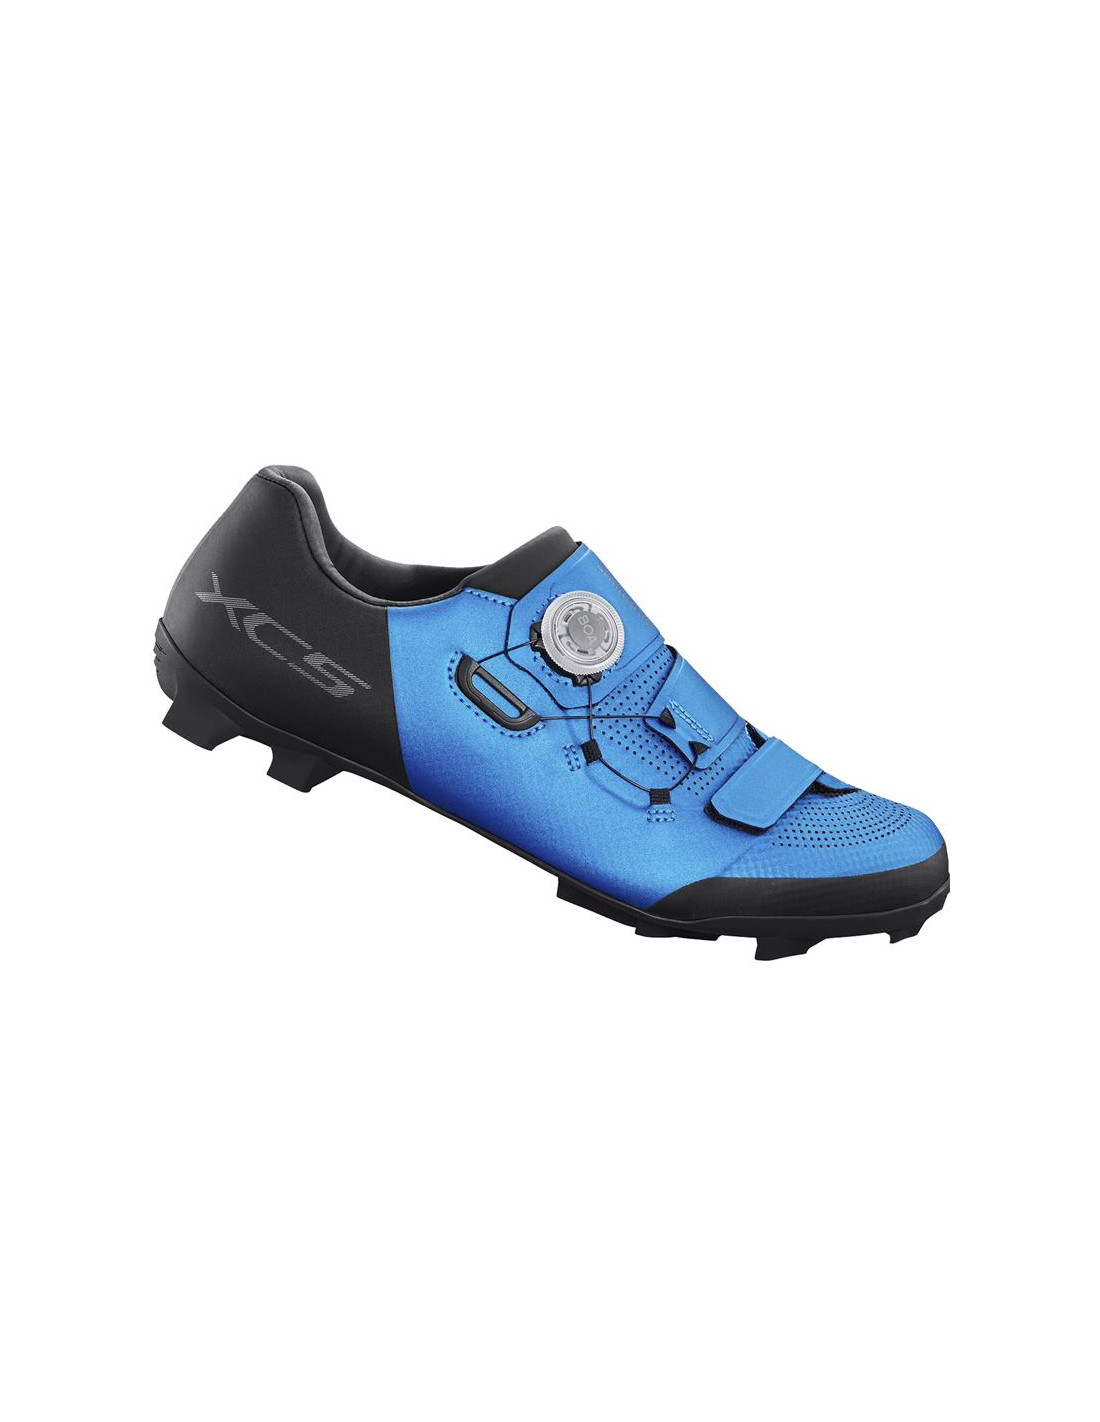 Zapatillas de ciclismo shimano xc502 azul hombre